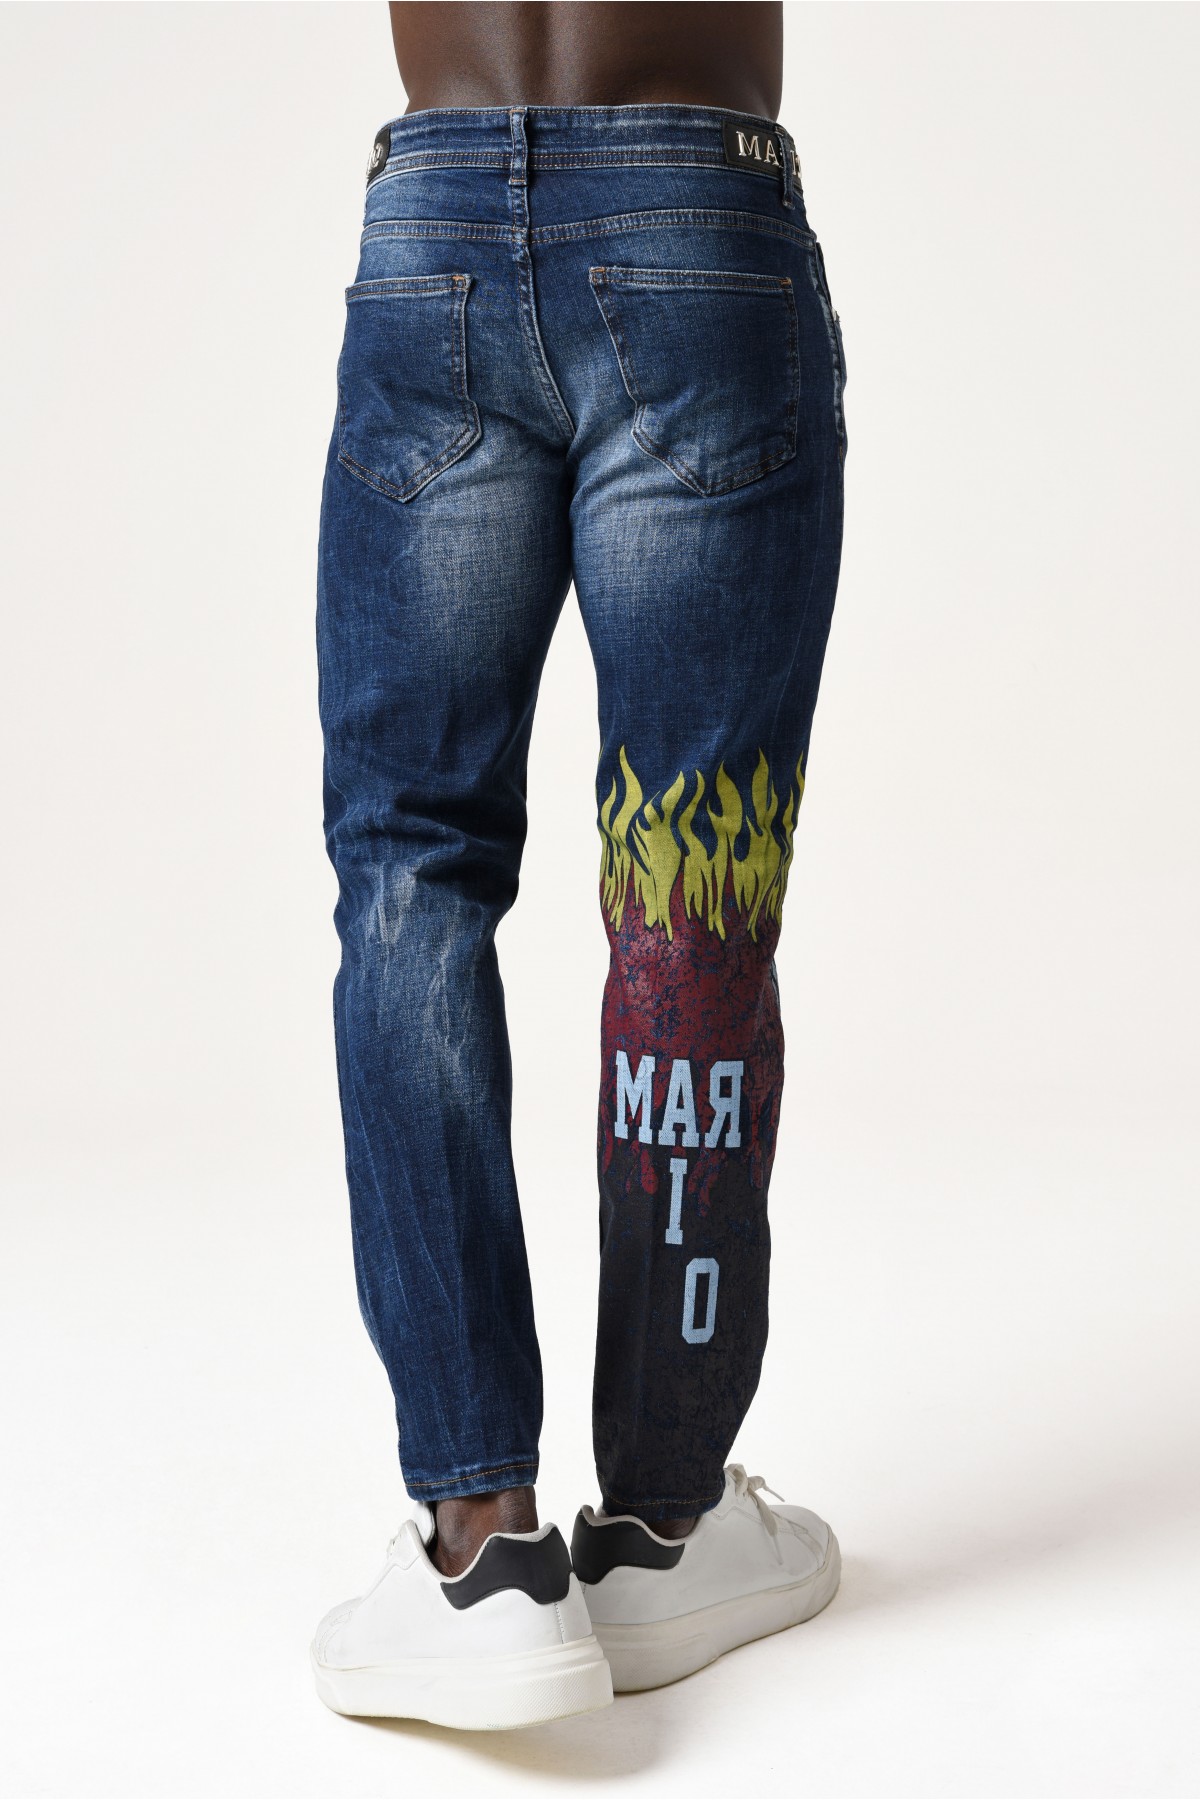 Erkek Denim Pantolon - At desenli Uzun yazılı - Mavi